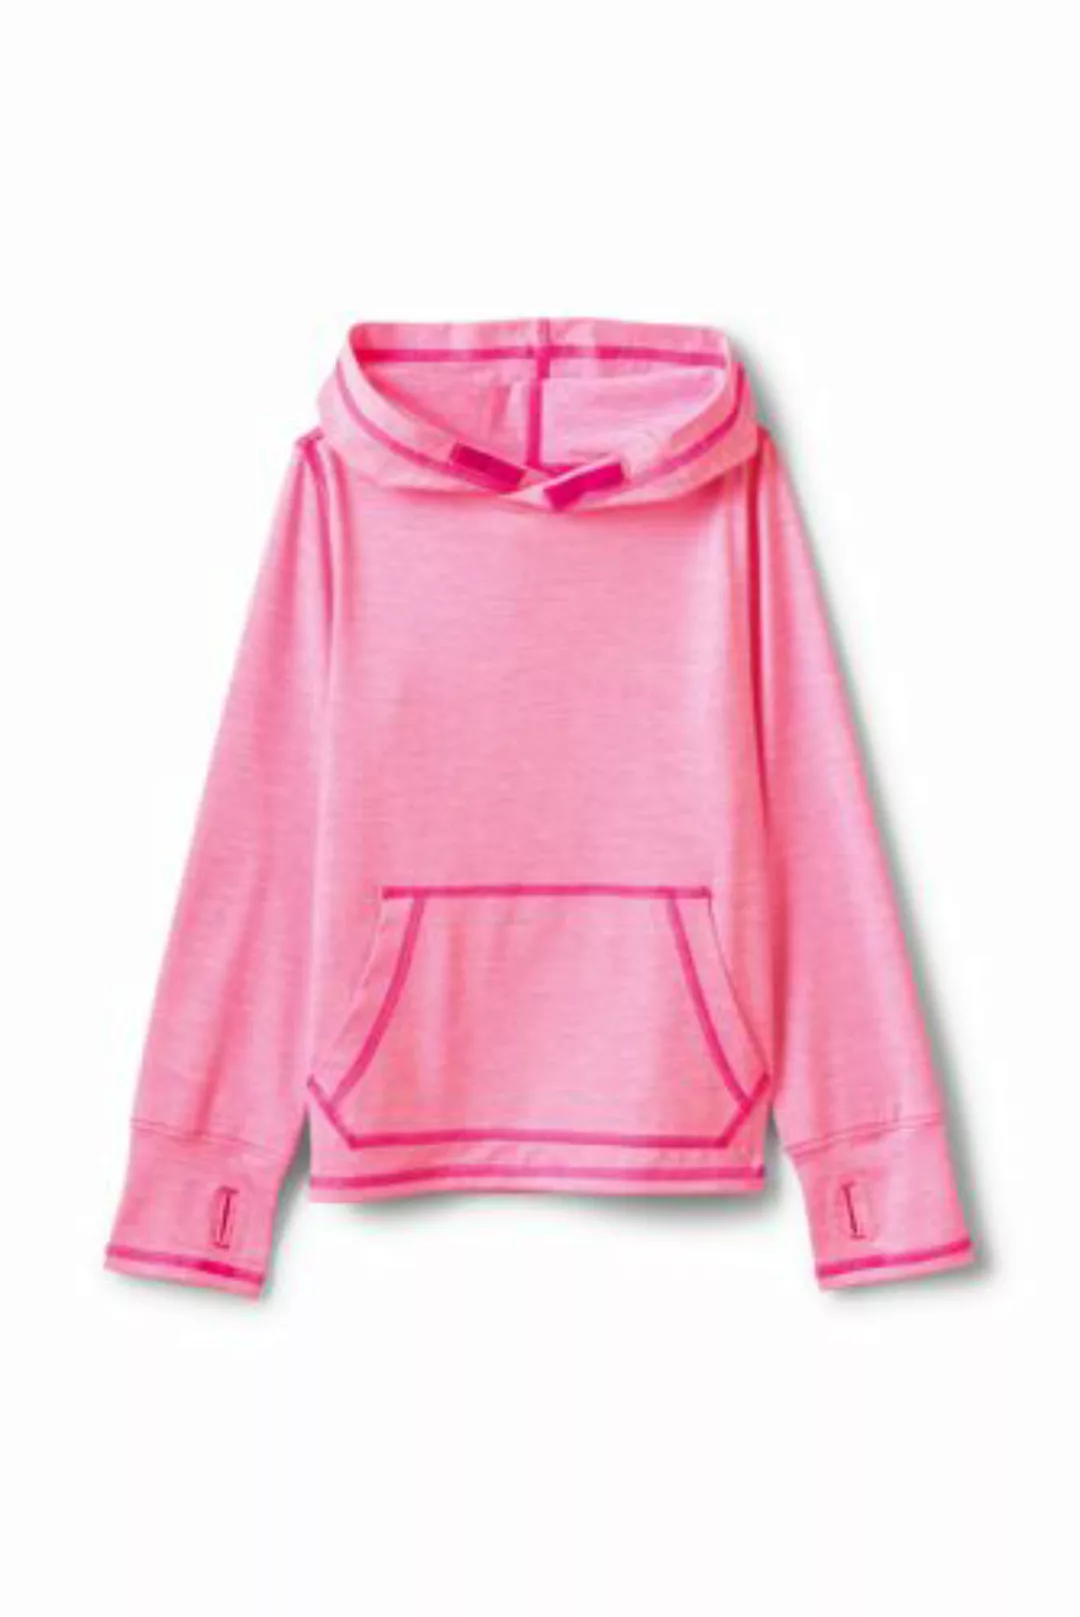 Aktiv-Kapuzenshirt, Größe: 98/104, Pink, Polyester-Mischung, by Lands' End, günstig online kaufen